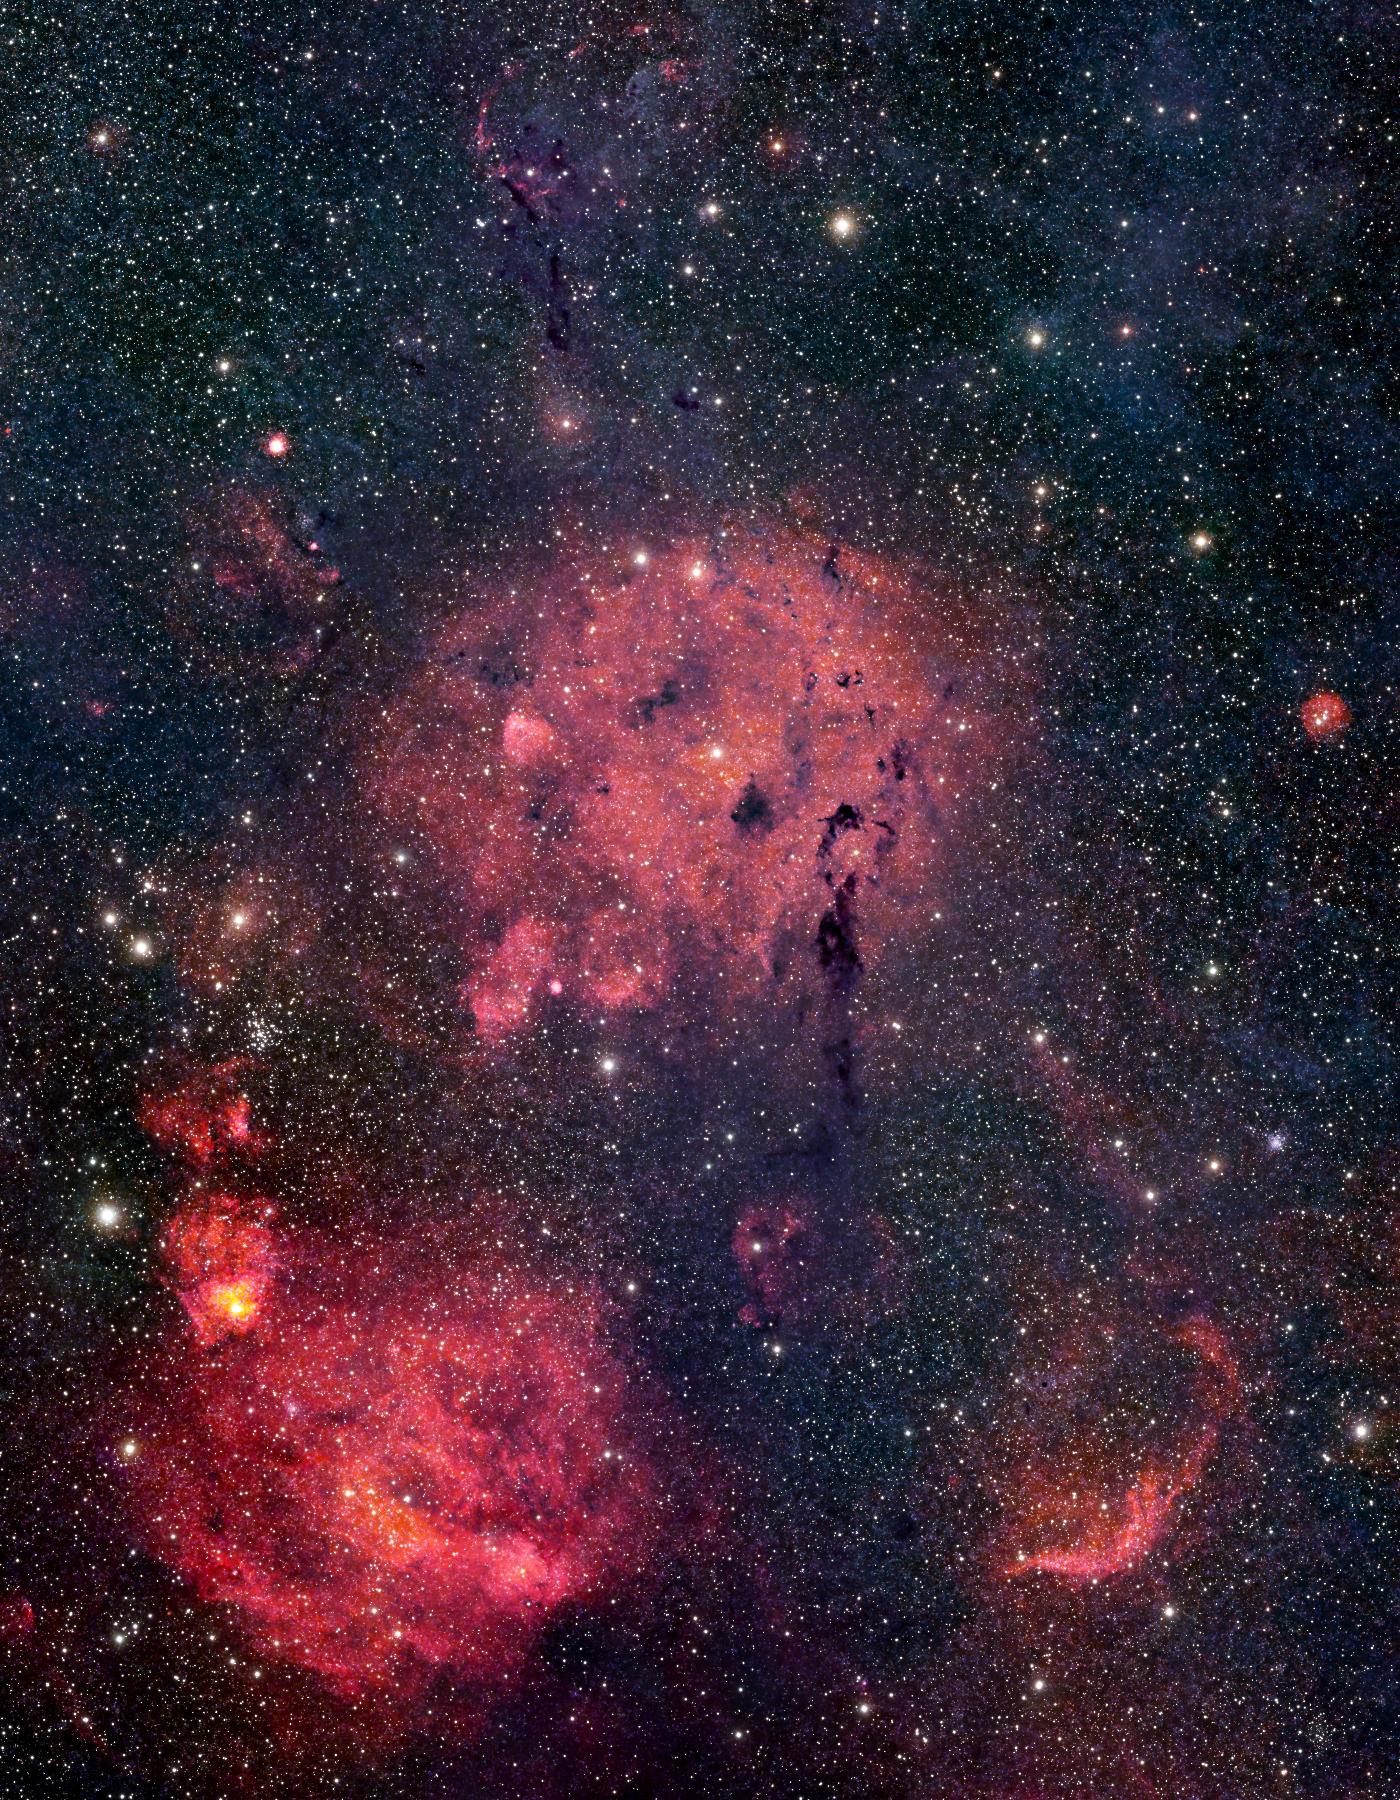 Many emission nebulae (including DU 71 and SH2-205)